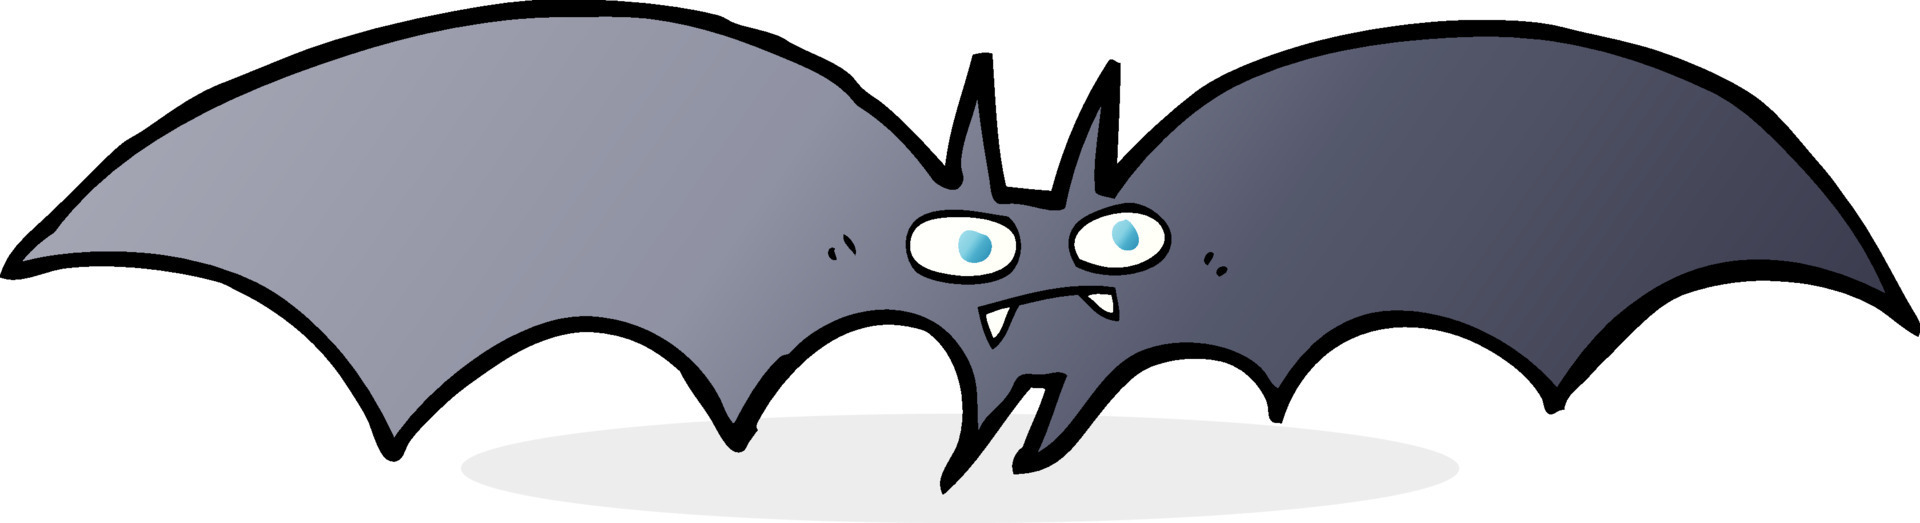 Desenho animado do morcego vampiro - Stockphoto #2618222